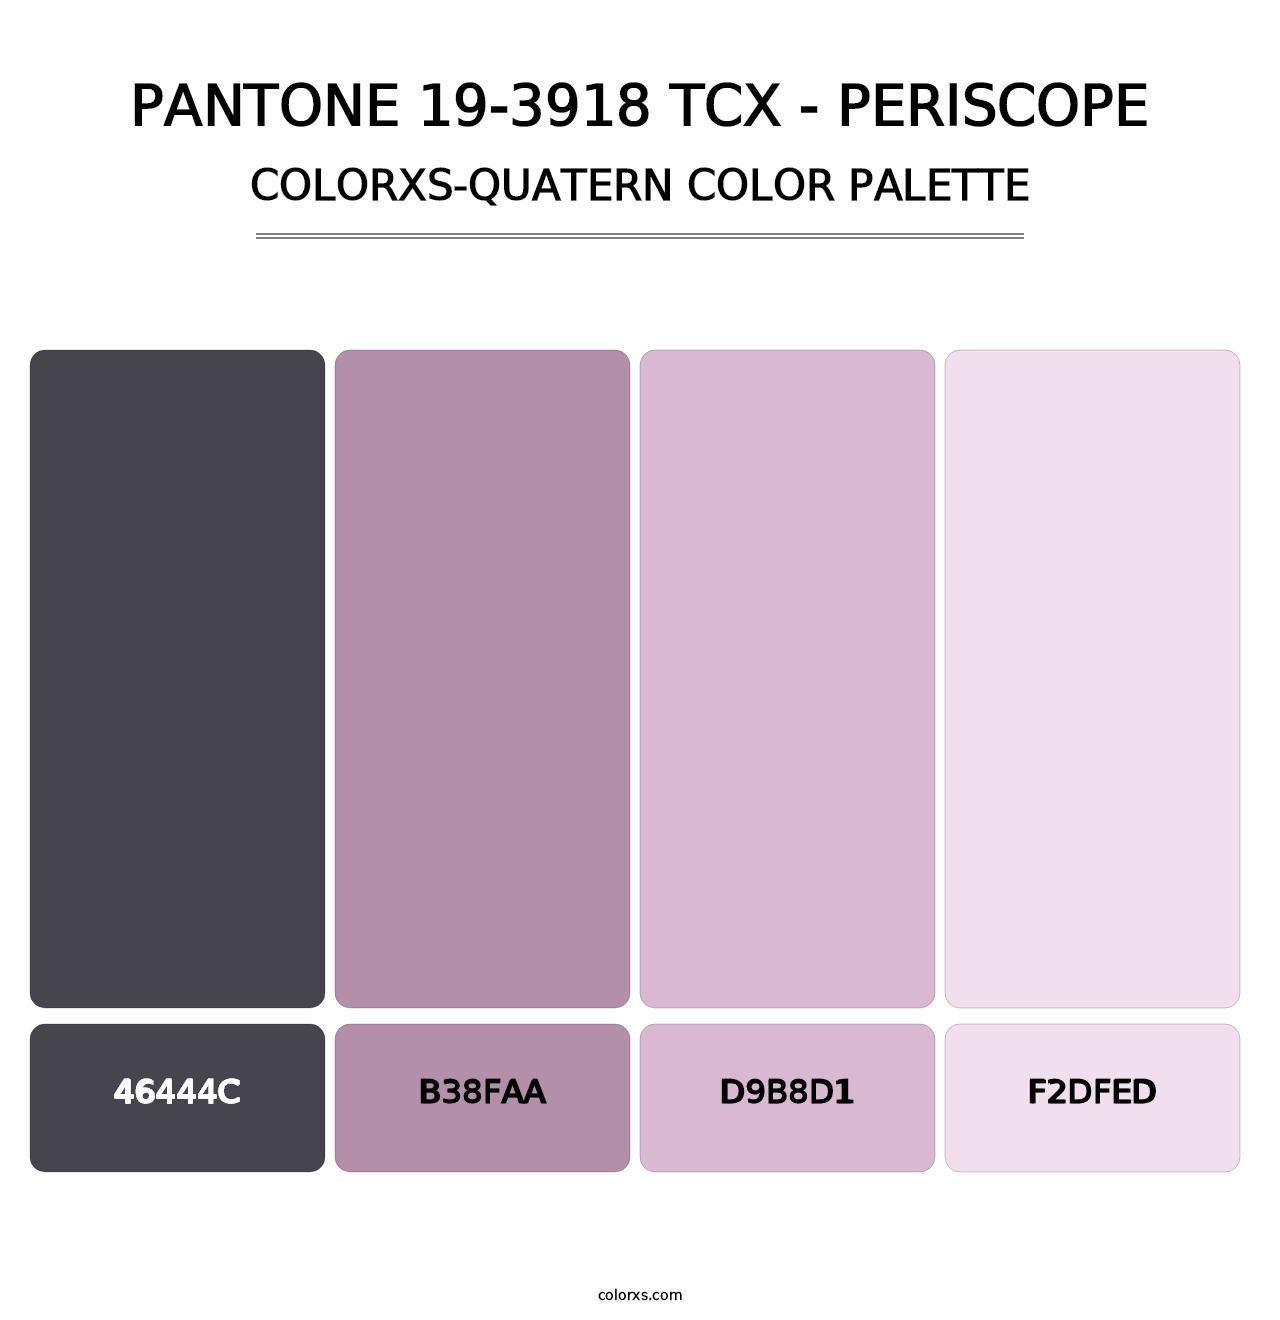 PANTONE 19-3918 TCX - Periscope - Colorxs Quatern Palette